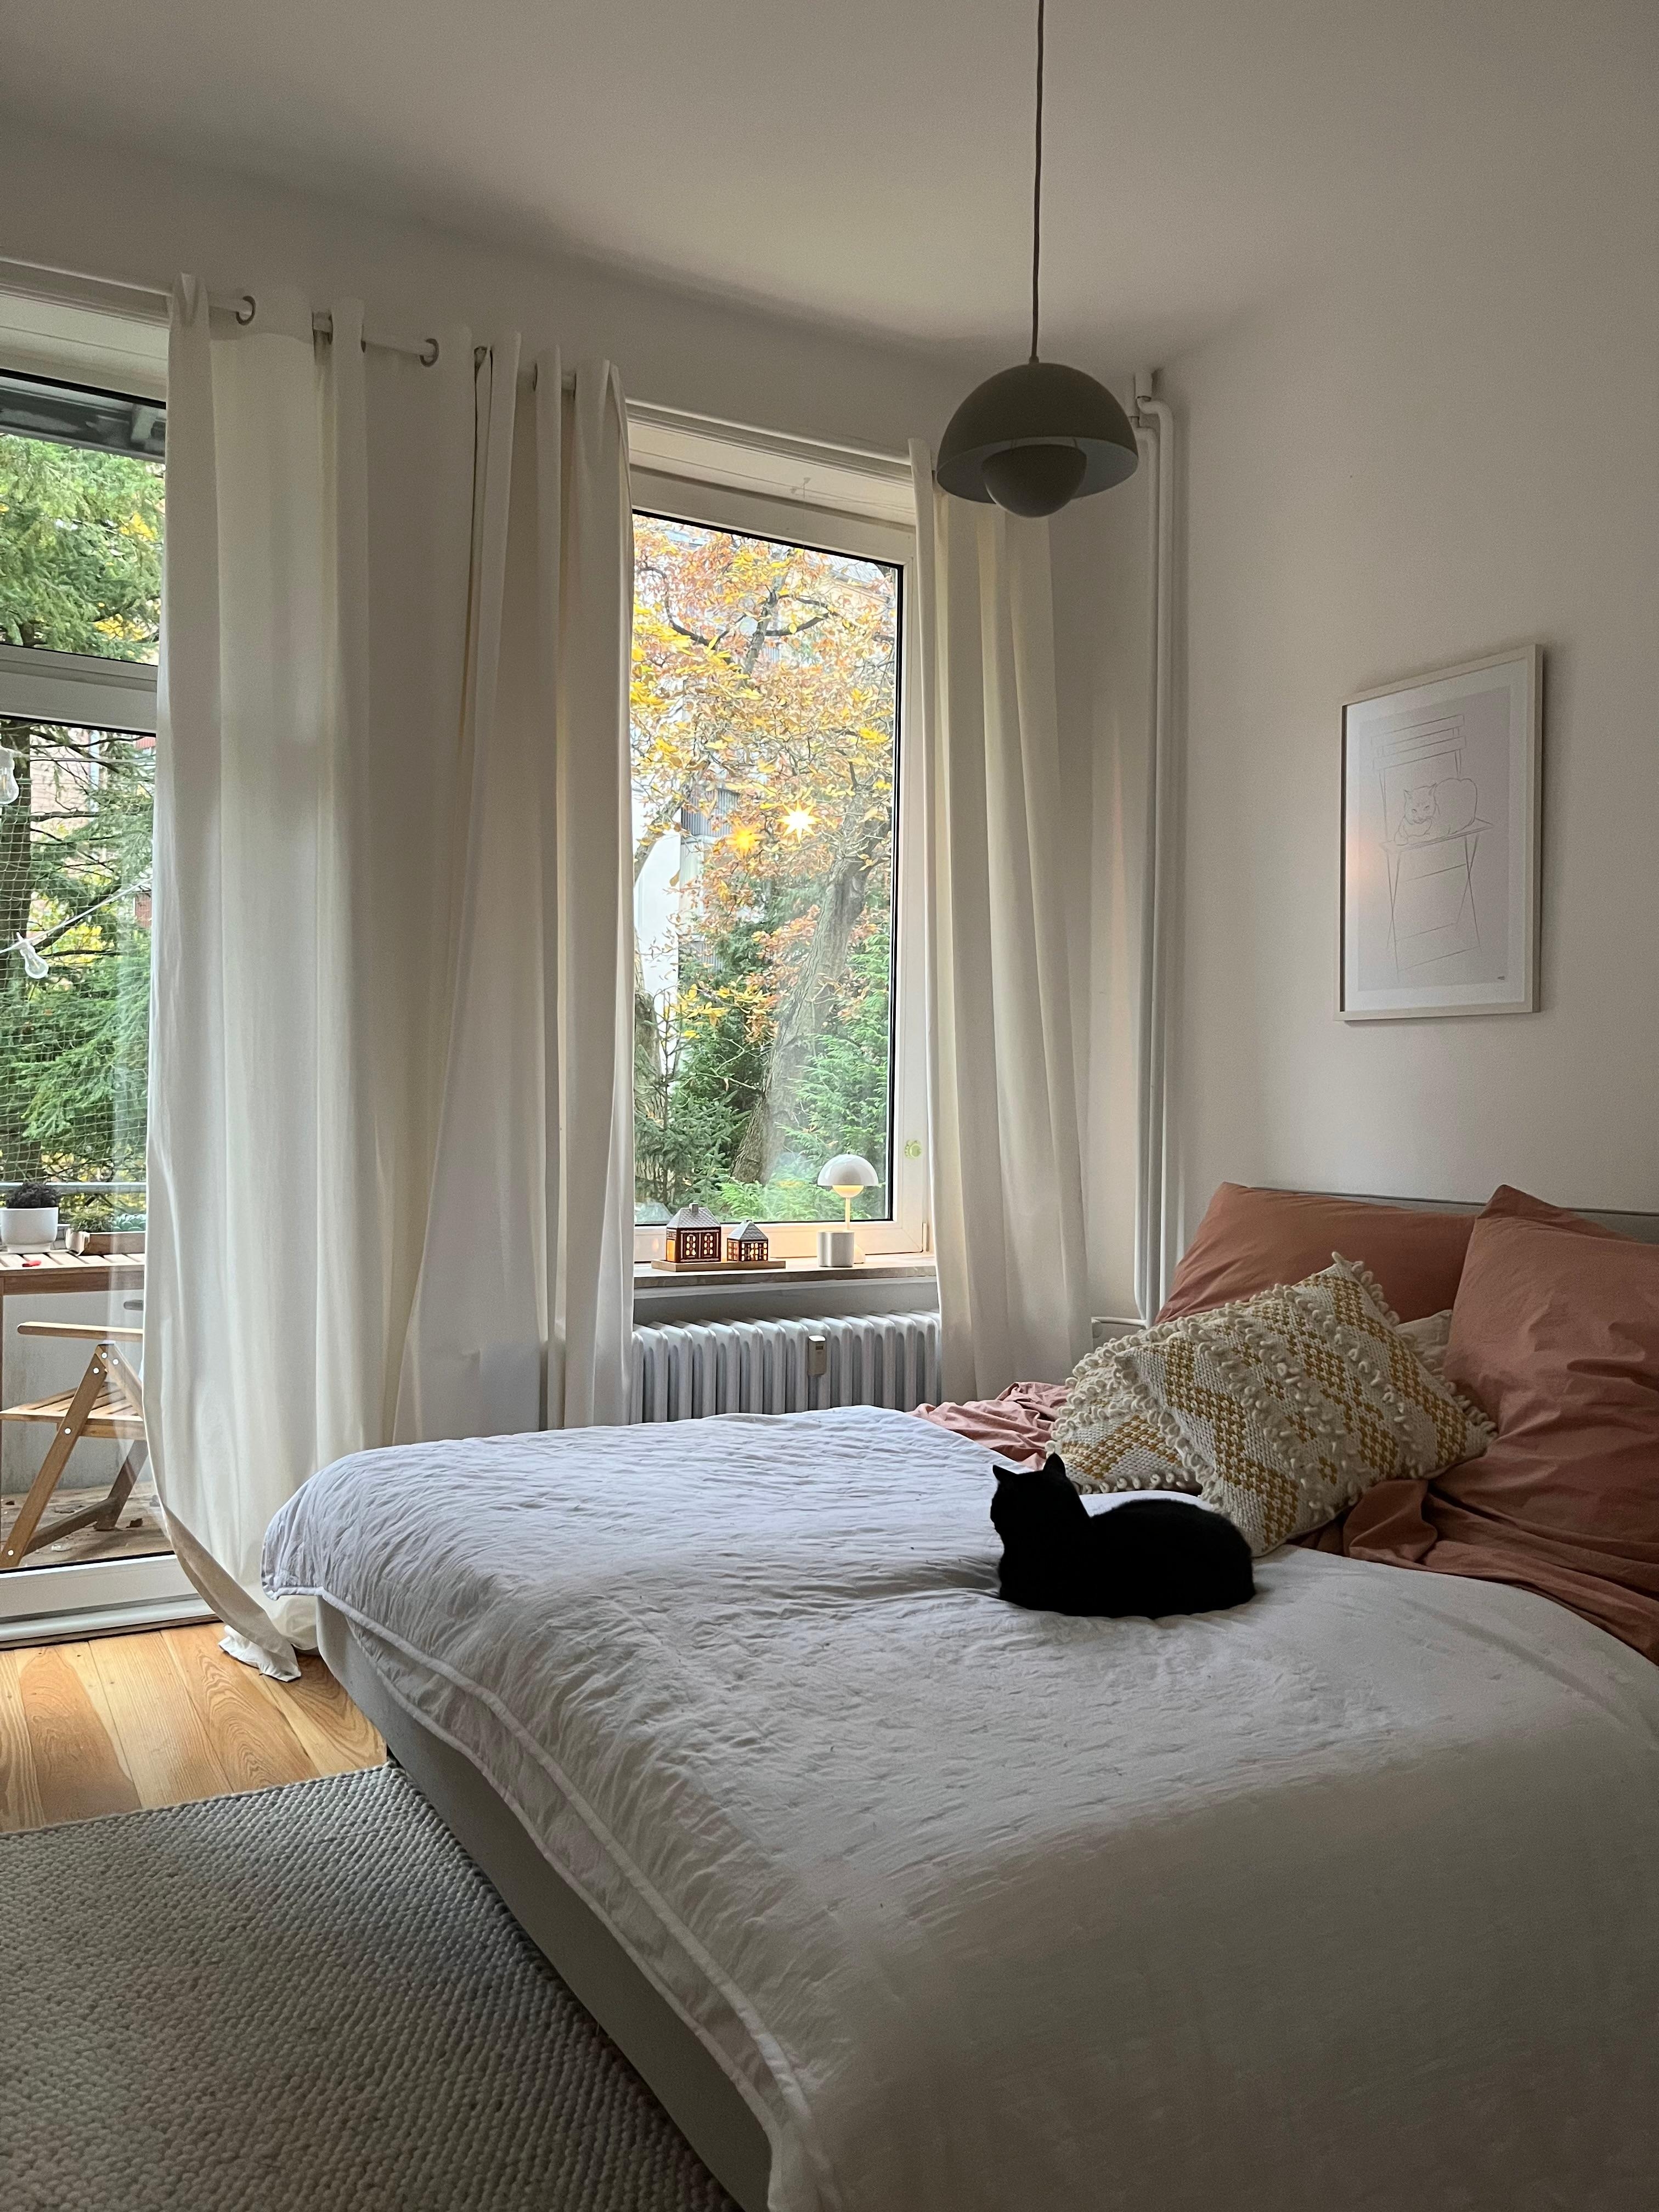 #schlafzimmer #altbauliebe #skandinavischwohnen #hygge #cozyvibes #katze 